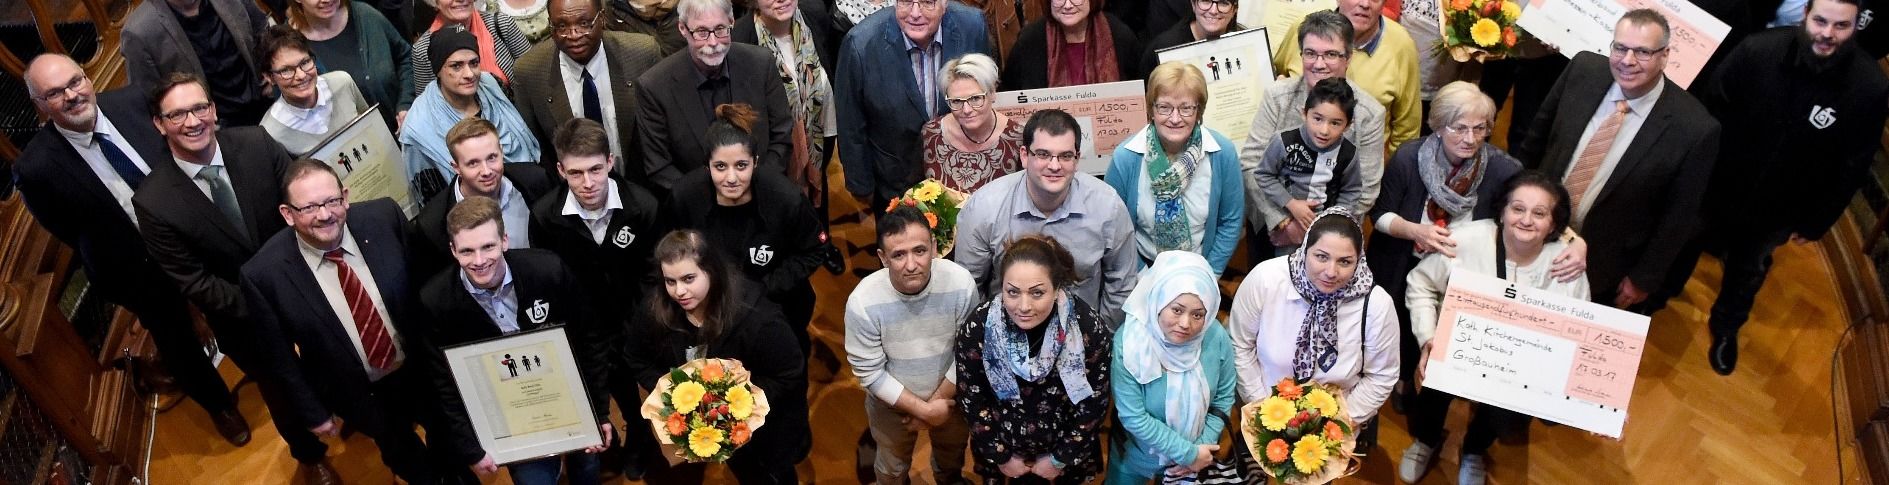 Bistum Fulda verleiht „Preis für Solidarität“ an Projekte der Flüchtlingshilfe / Foto: Bistum Fulda/Marzena Seidel